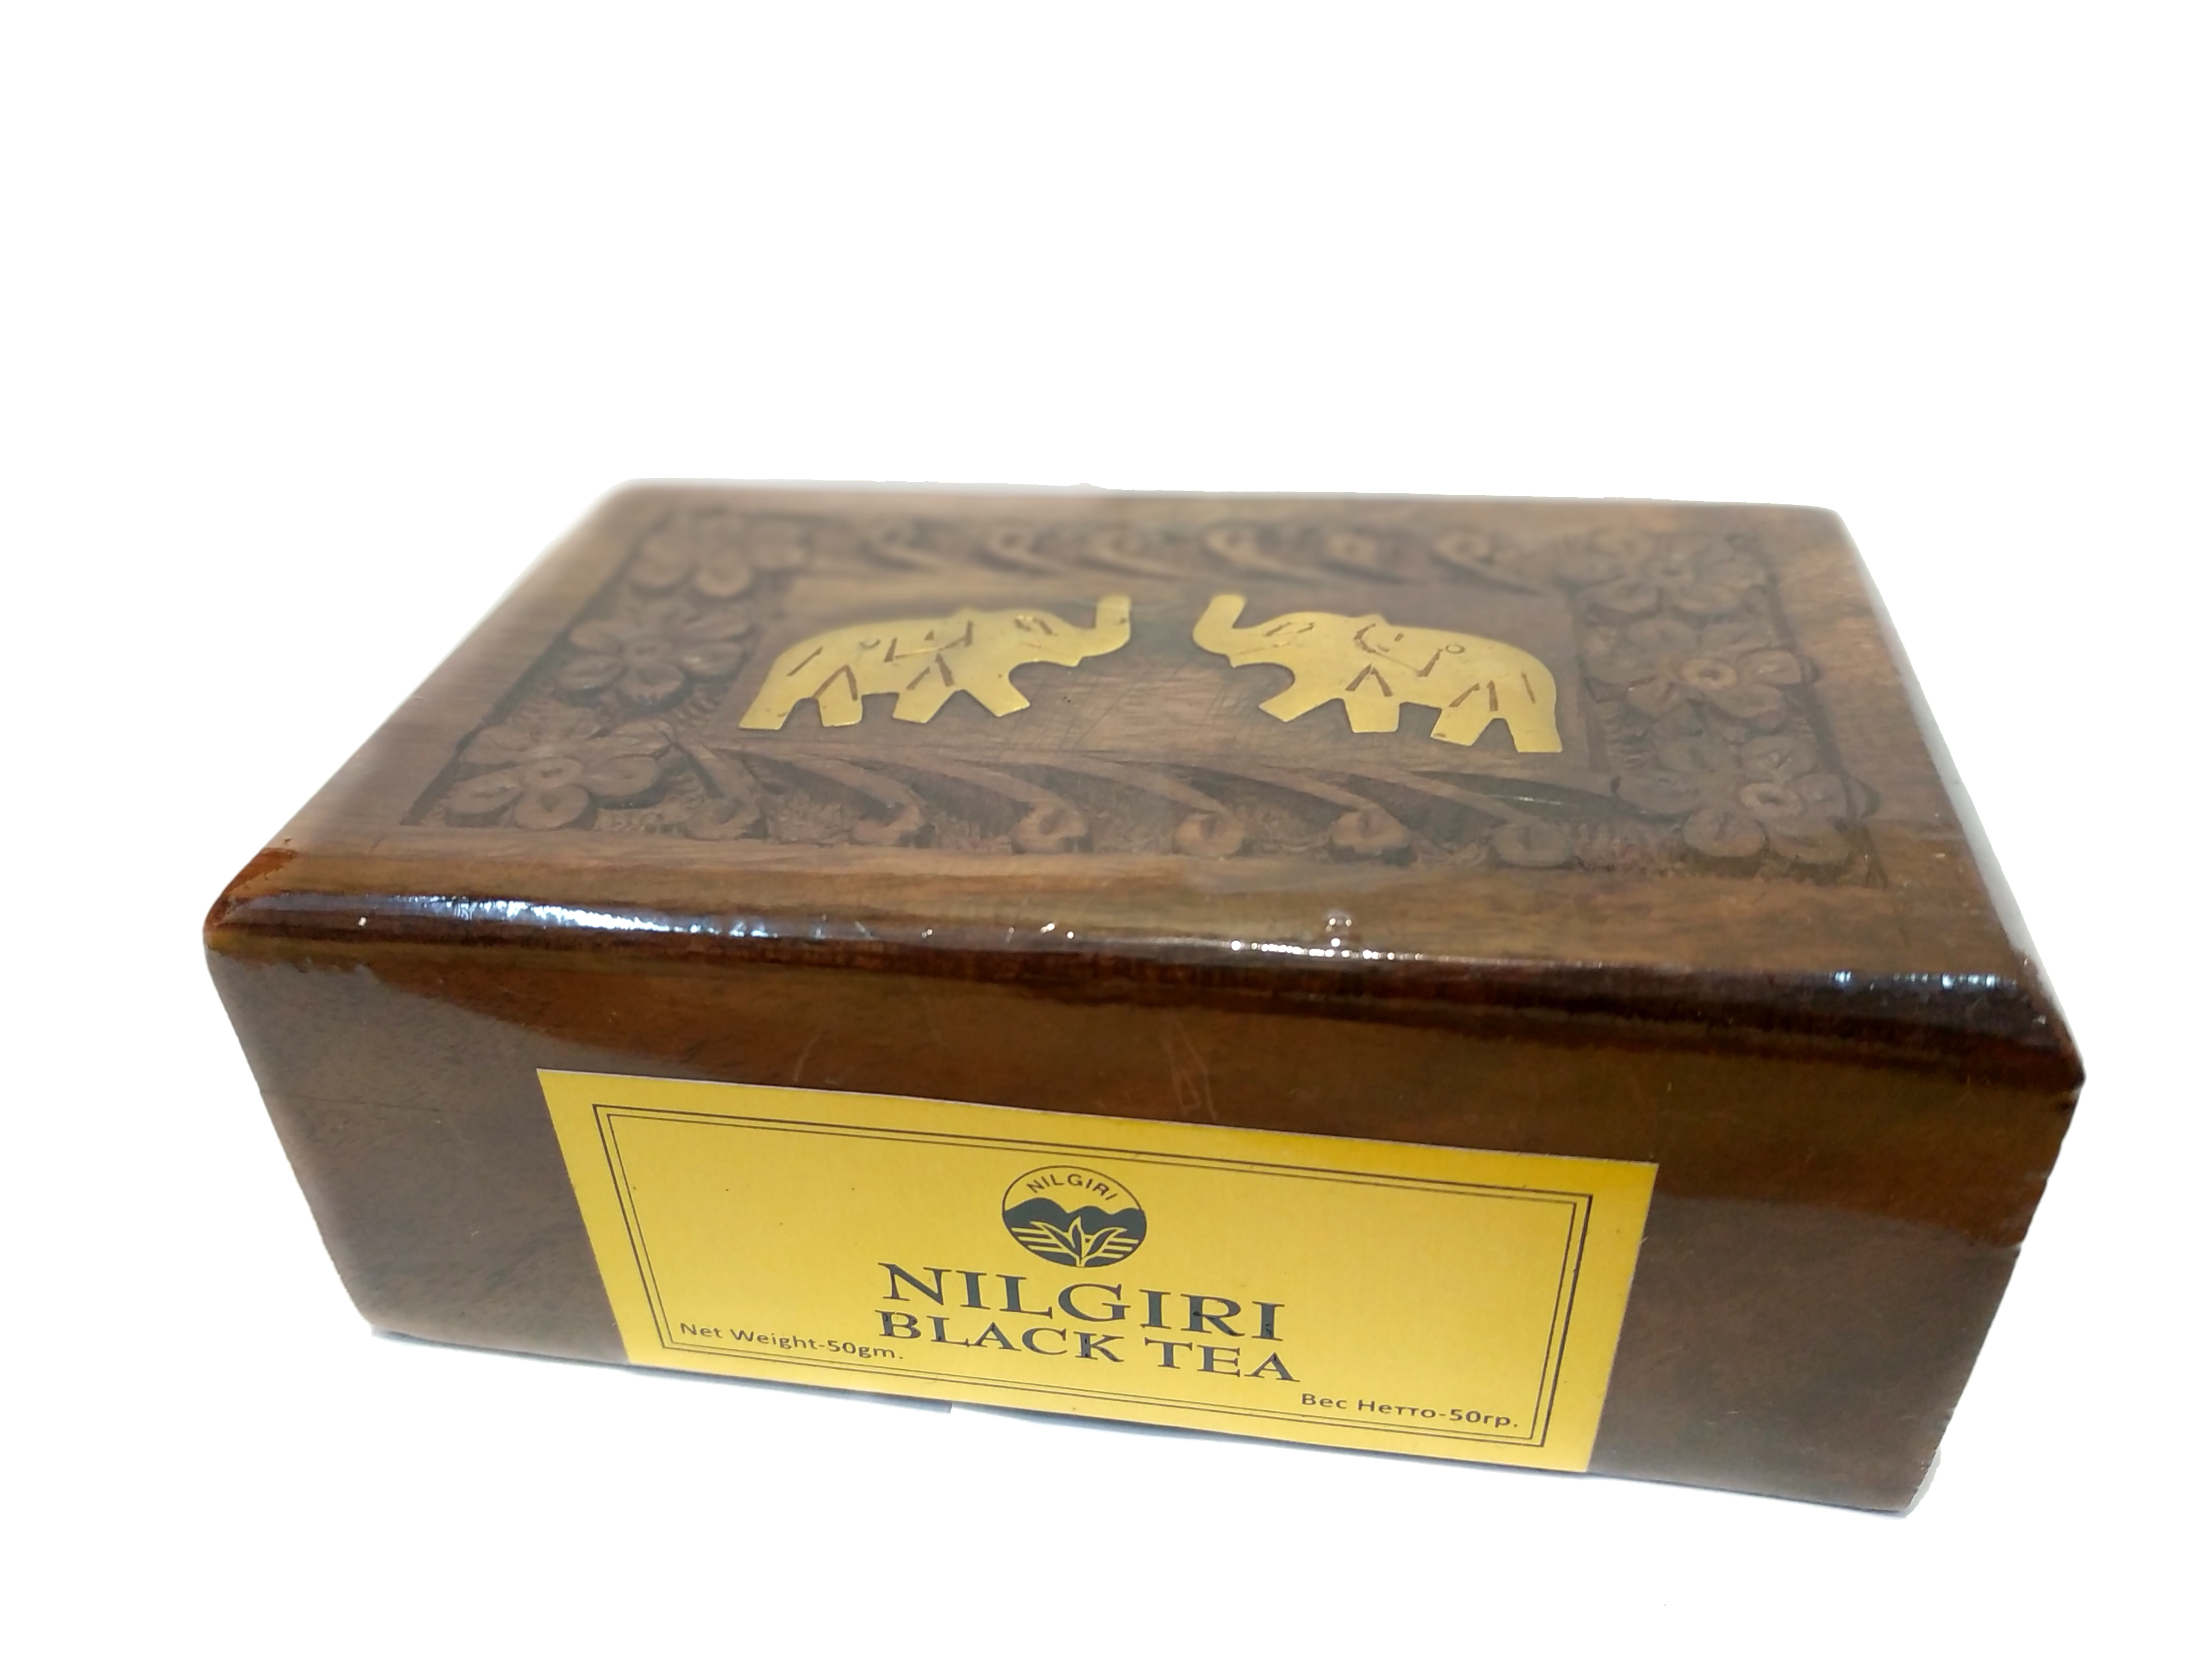 NILGIRI Black Tea Bharat Bazaar (Подарочный набор чая НИЛГИРИ Черный в Деревянной коробке, Бхарат Базар), 50 г.